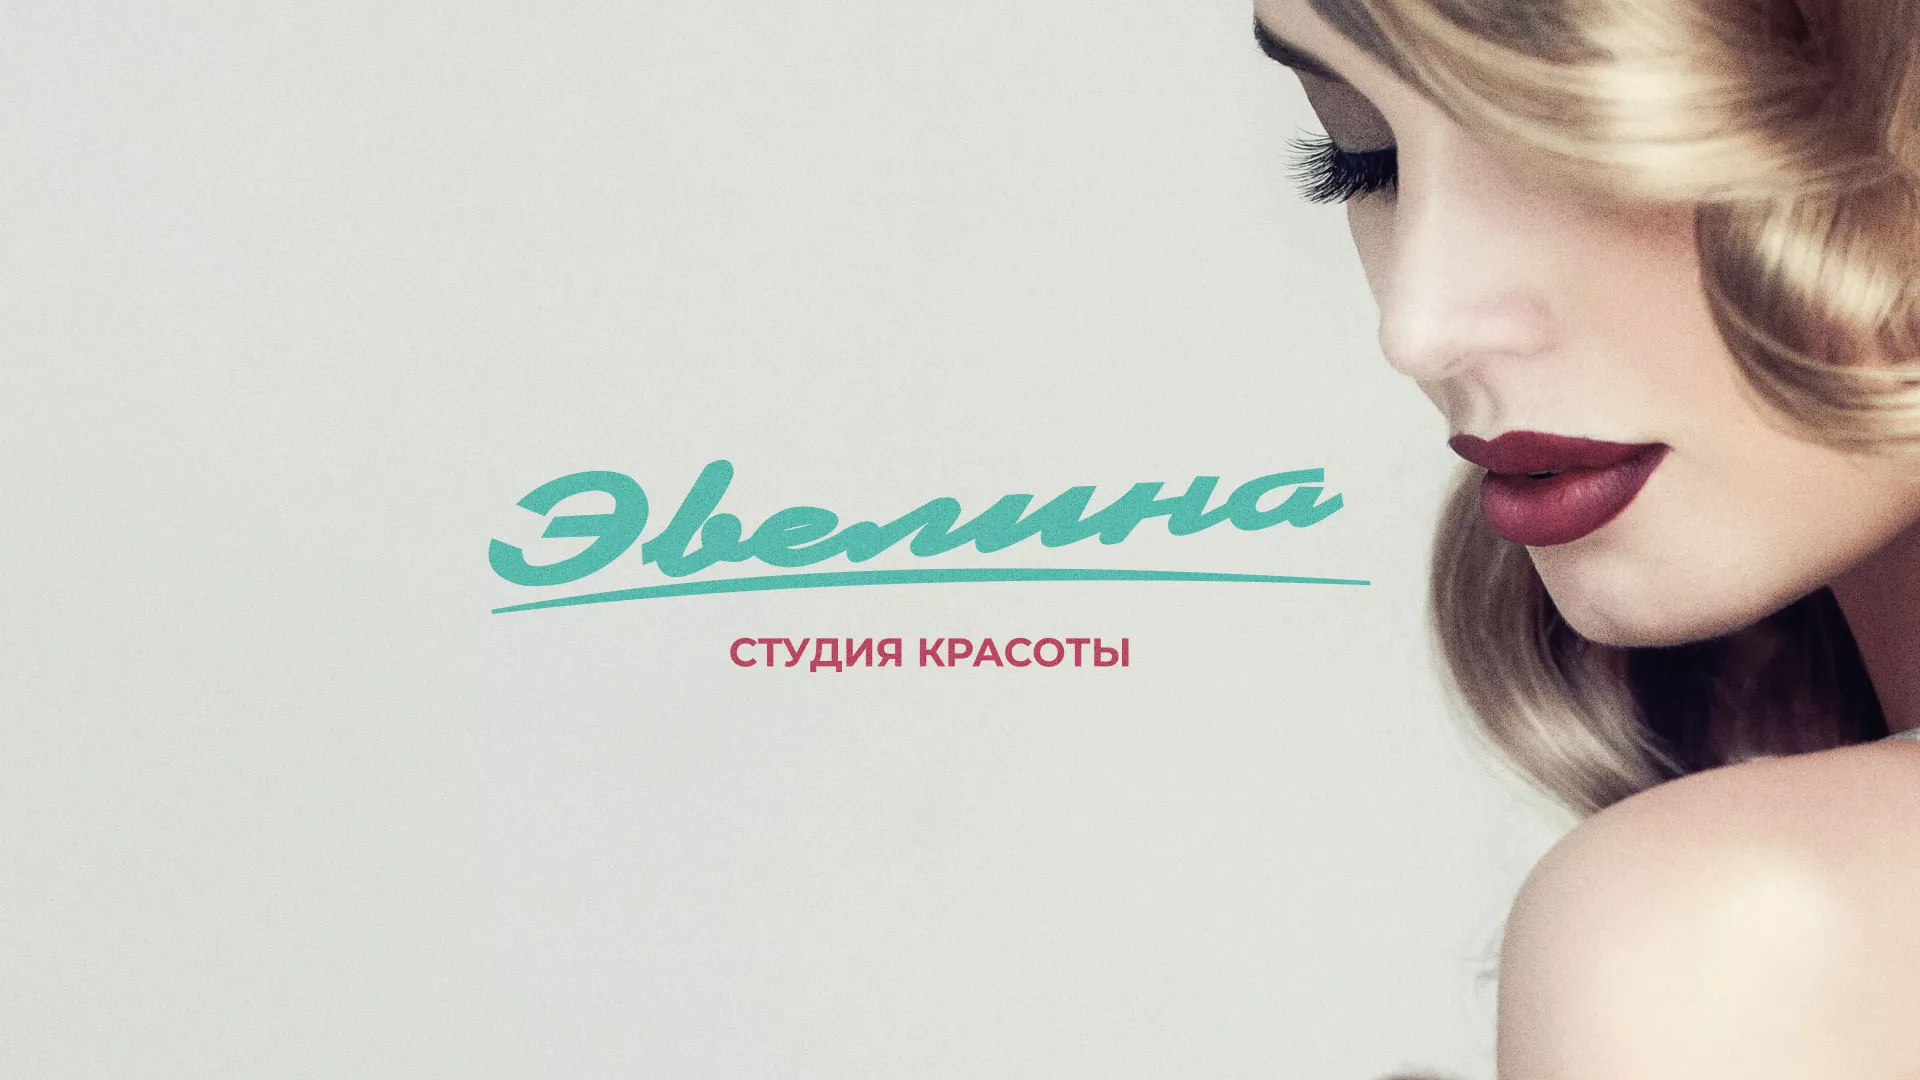 Разработка сайта для салона красоты «Эвелина» в Кемерово